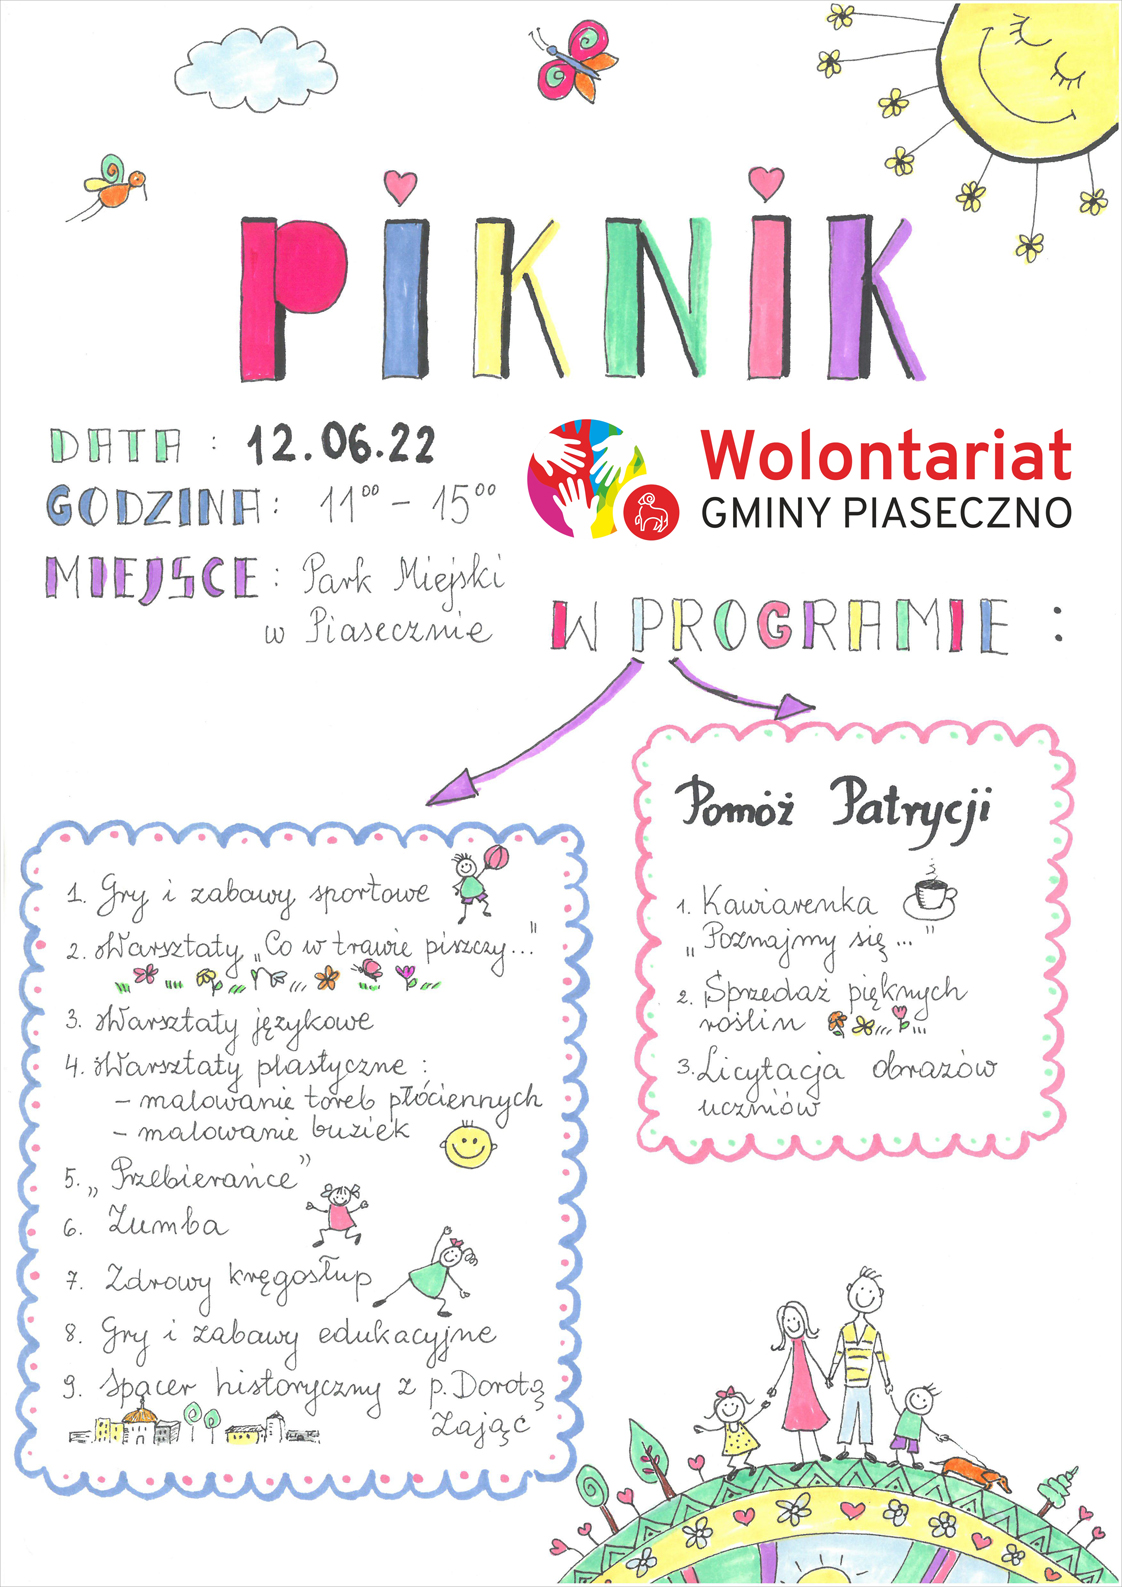 Plakat wydarzenia Piknik Wolontariat Gminy Piaseczno